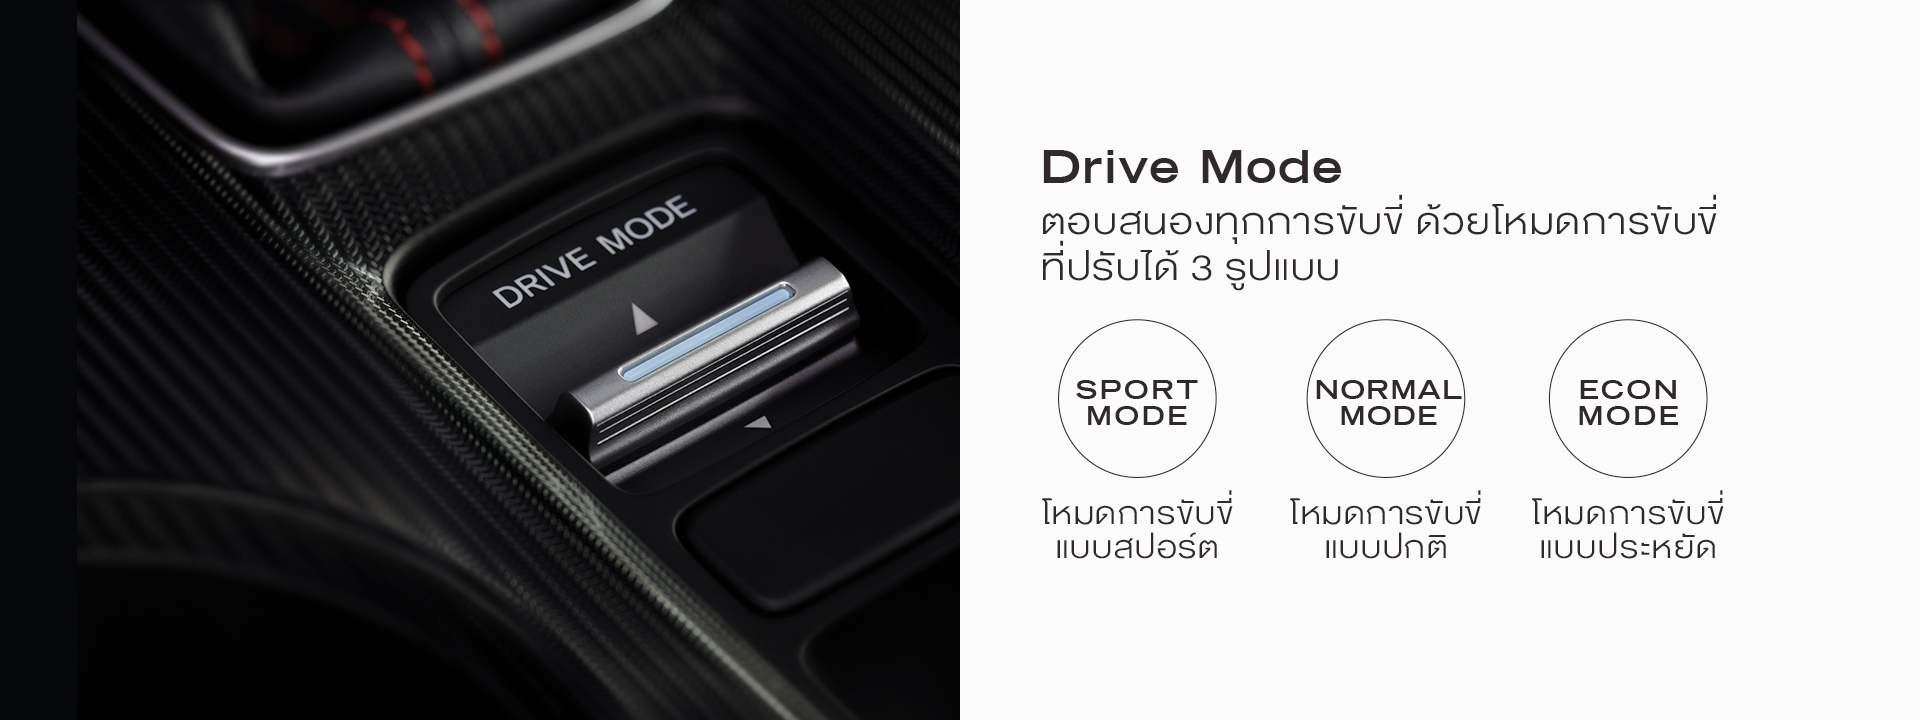 Drive Mode ตอบสนองทุกการขับขี่ ด้วยโหมดขับขี่ที่ปรับได้ 3 รูปแบบ โหมดการขับขี่แบบสปอร์ต โหมดการขับขี่แบบปกติ และโหมดการขับขี่แบบประหยัด